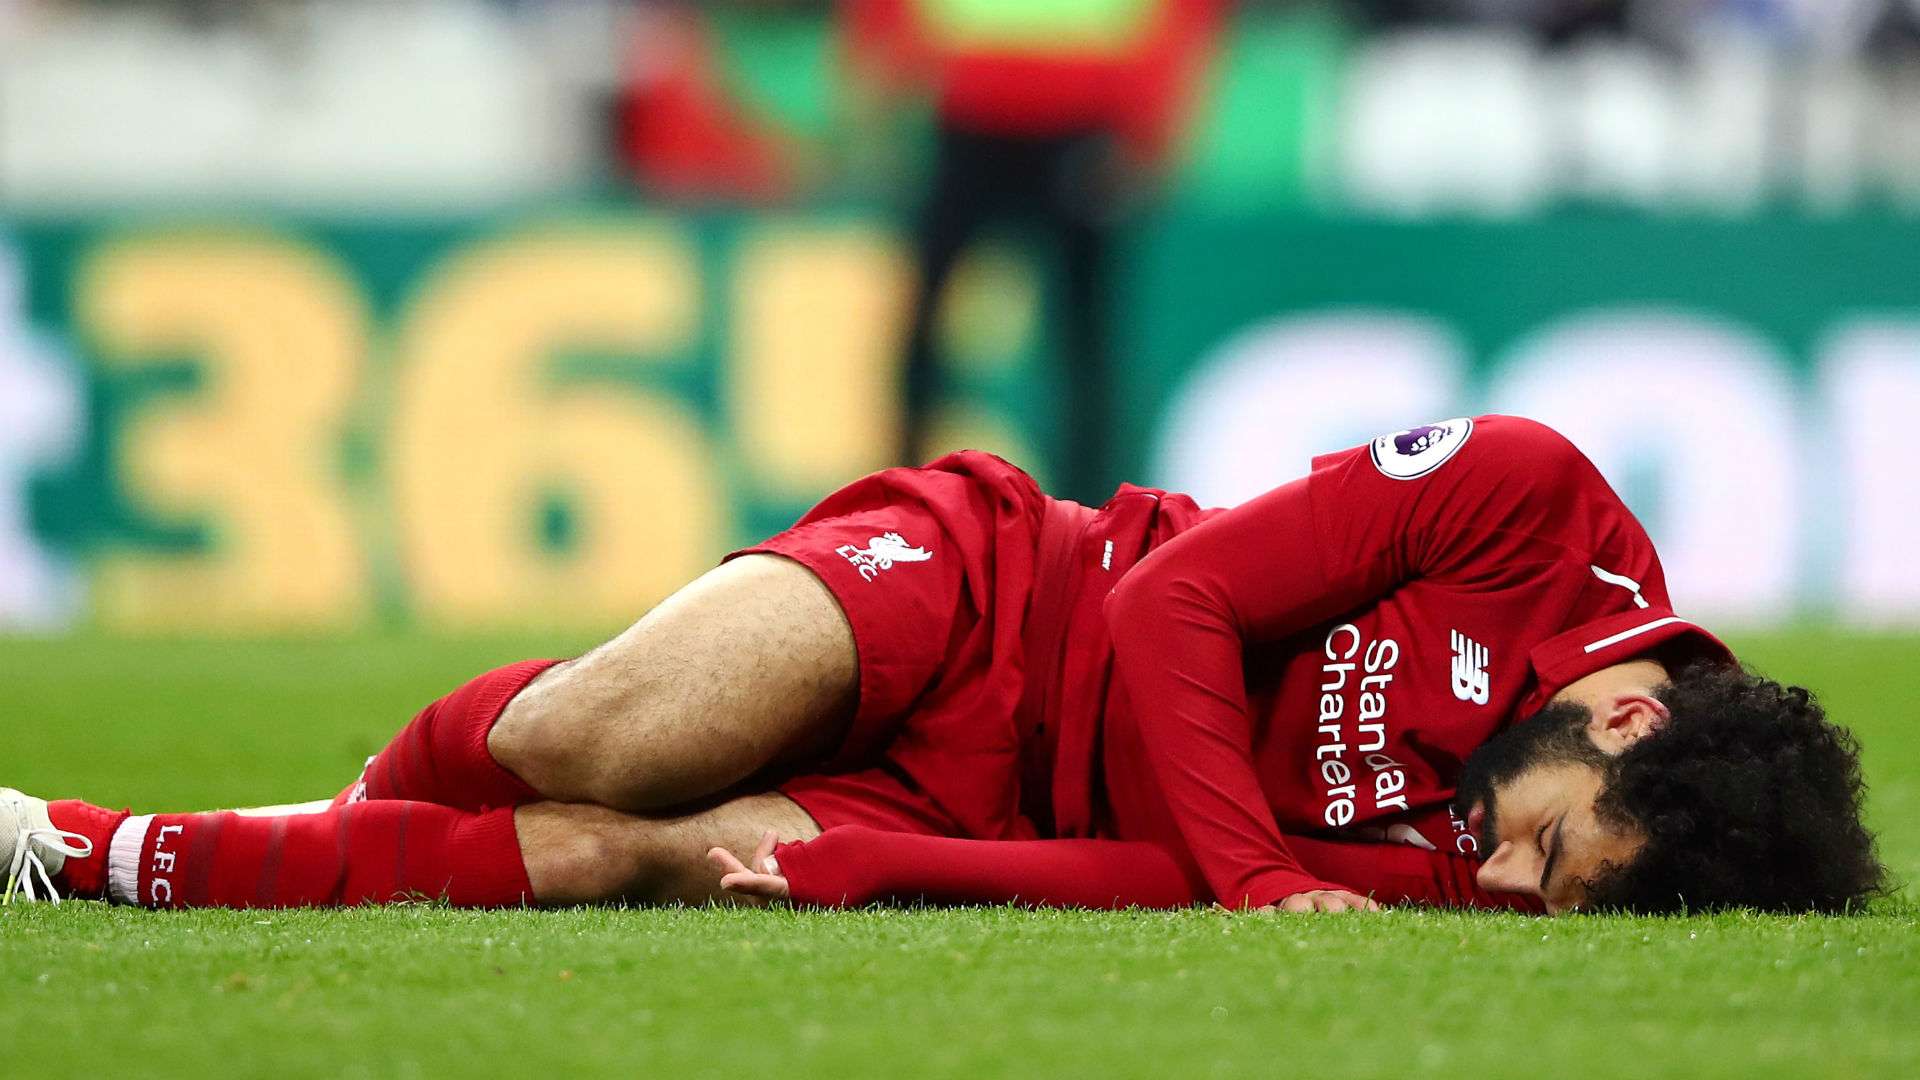 Champions League/ Sot Liverpool për mrekullinë, pa sulmuesit Salah e Firmino